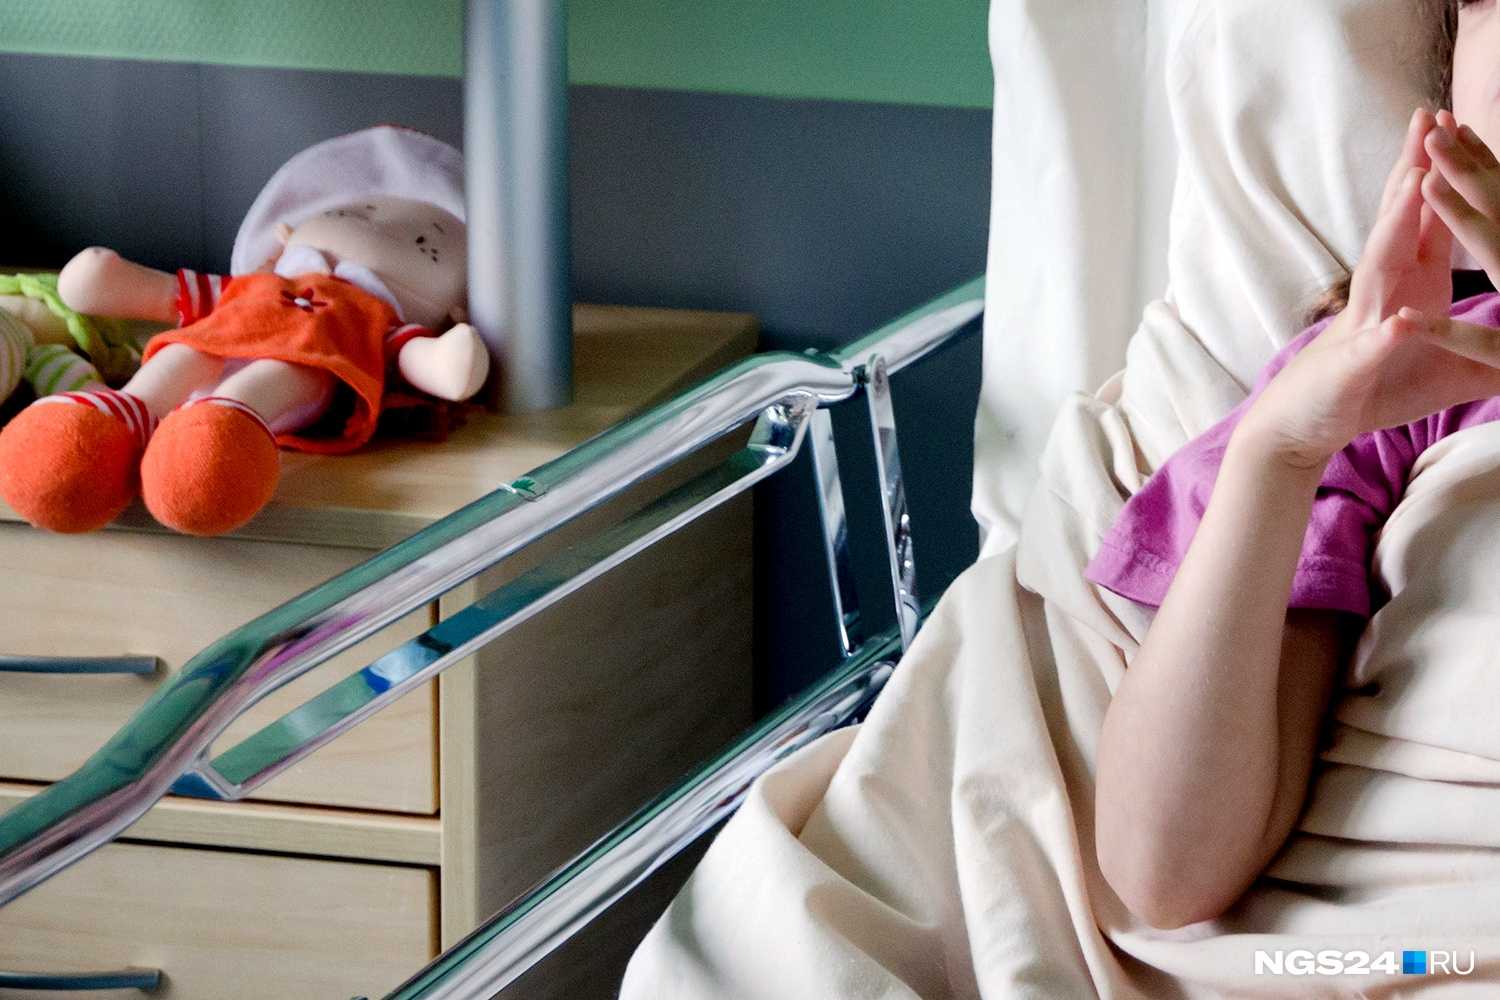 Внутриутробная смерть ребенка: дело житейское или горе горькое? комментарий психолога